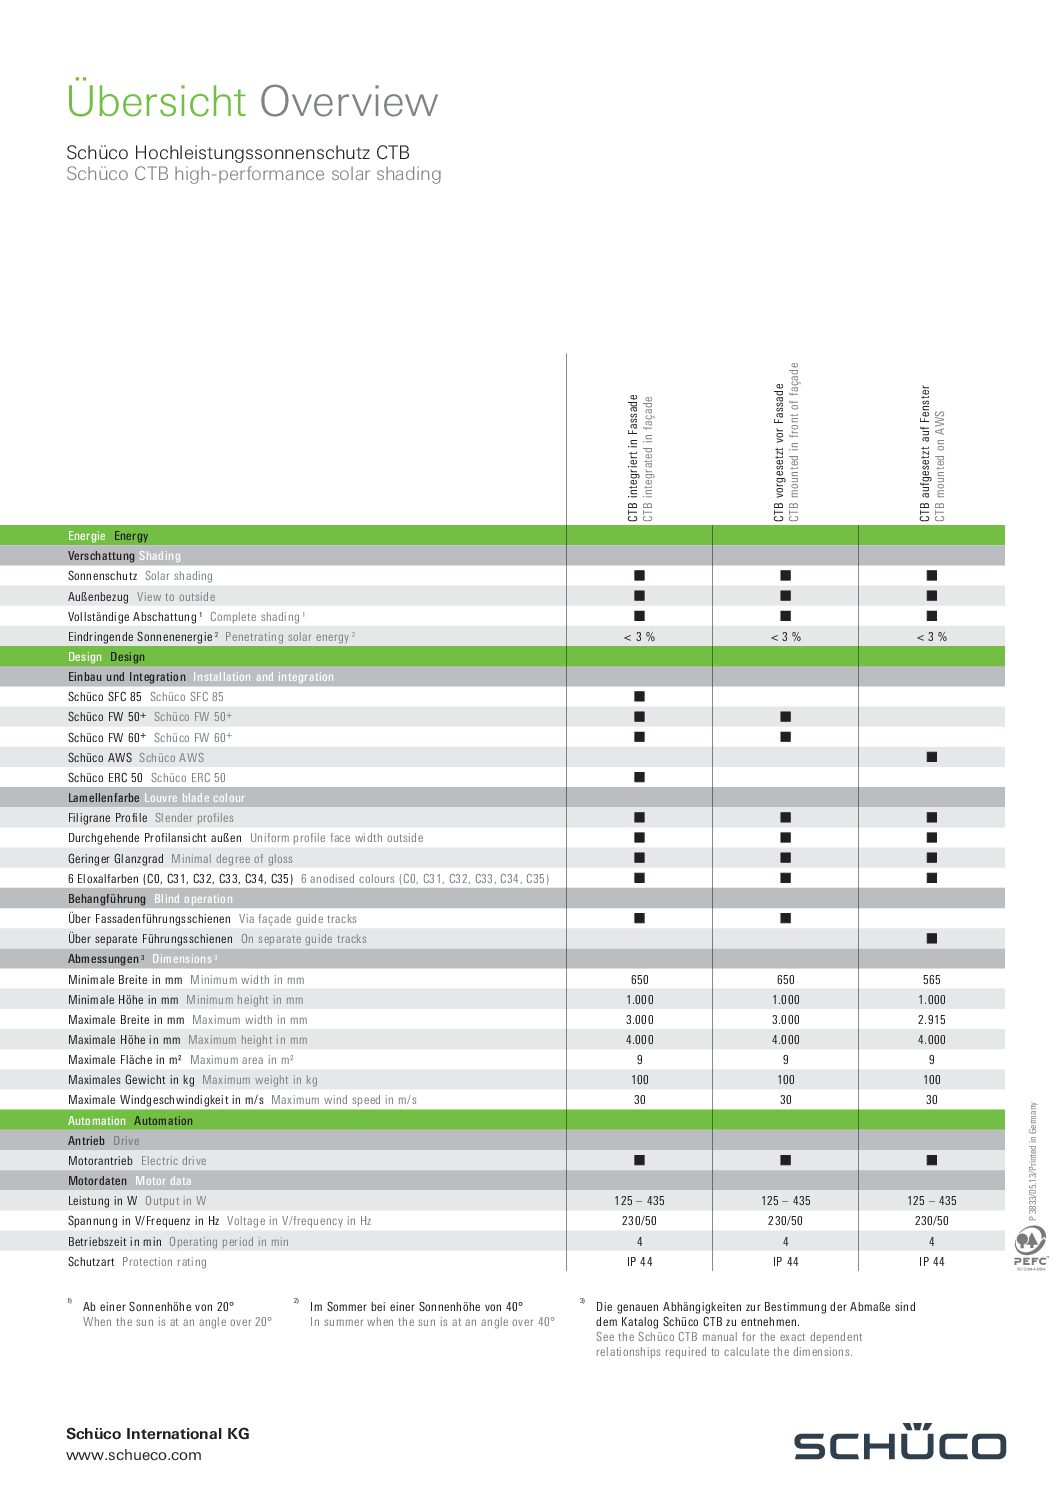 Schüco-Übersicht-Hochleistungssonnenschutz-CTB-Inhalt-PF-P3826-Stand-2013-06-P3833